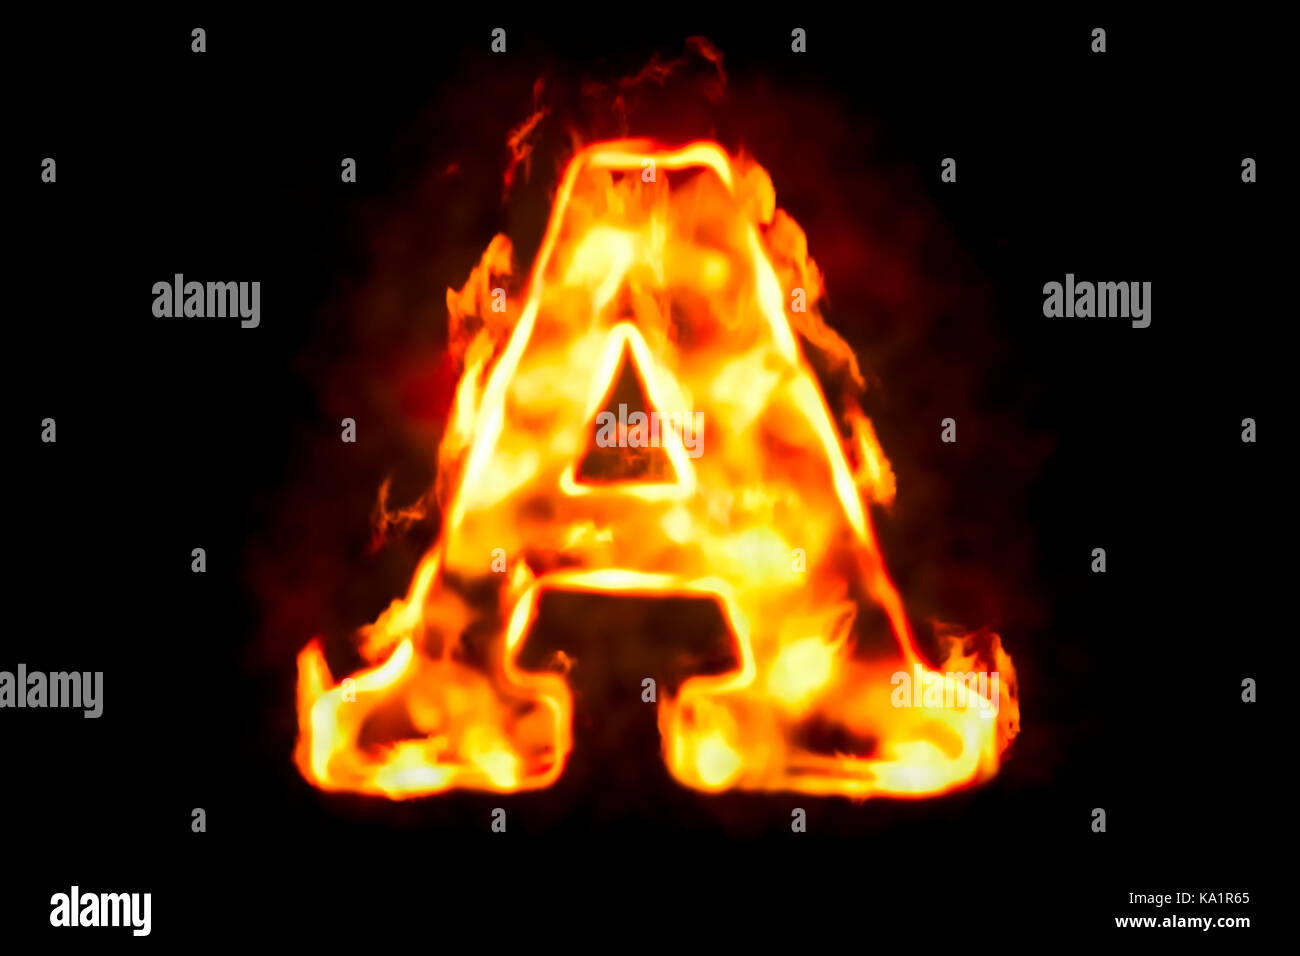 Fire lettera a della fiamma di fuoco luce, 3d rendering isolati su sfondo nero Foto Stock